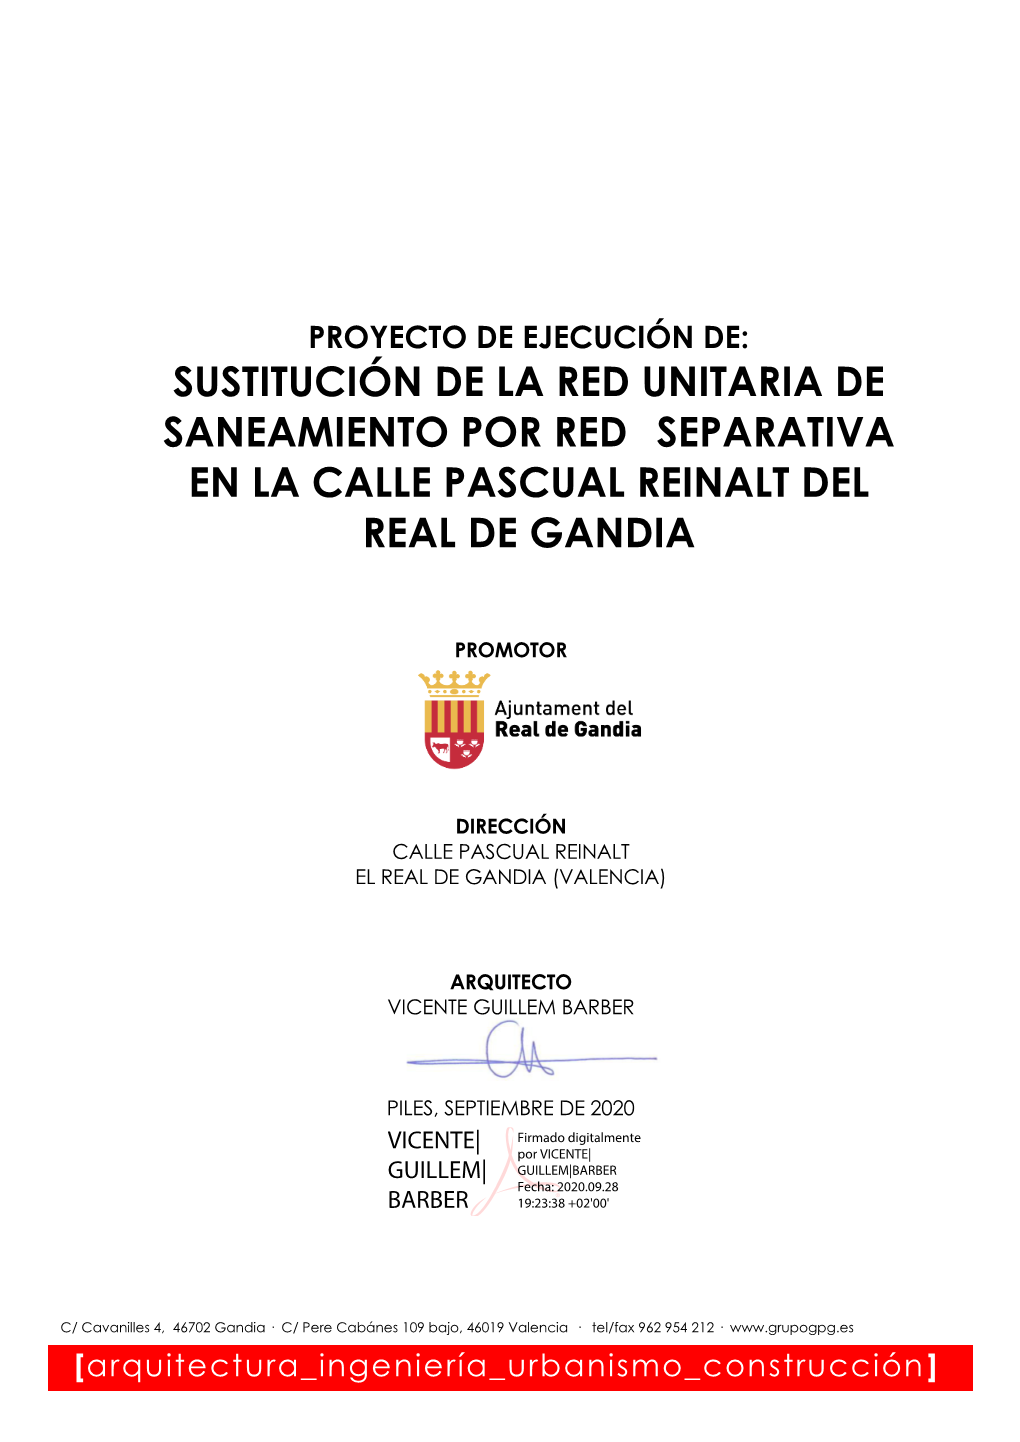 Sustitución De La Red Unitaria De Saneamiento Por Red Separativa En La Calle Pascual Reinalt Del Real De Gandia